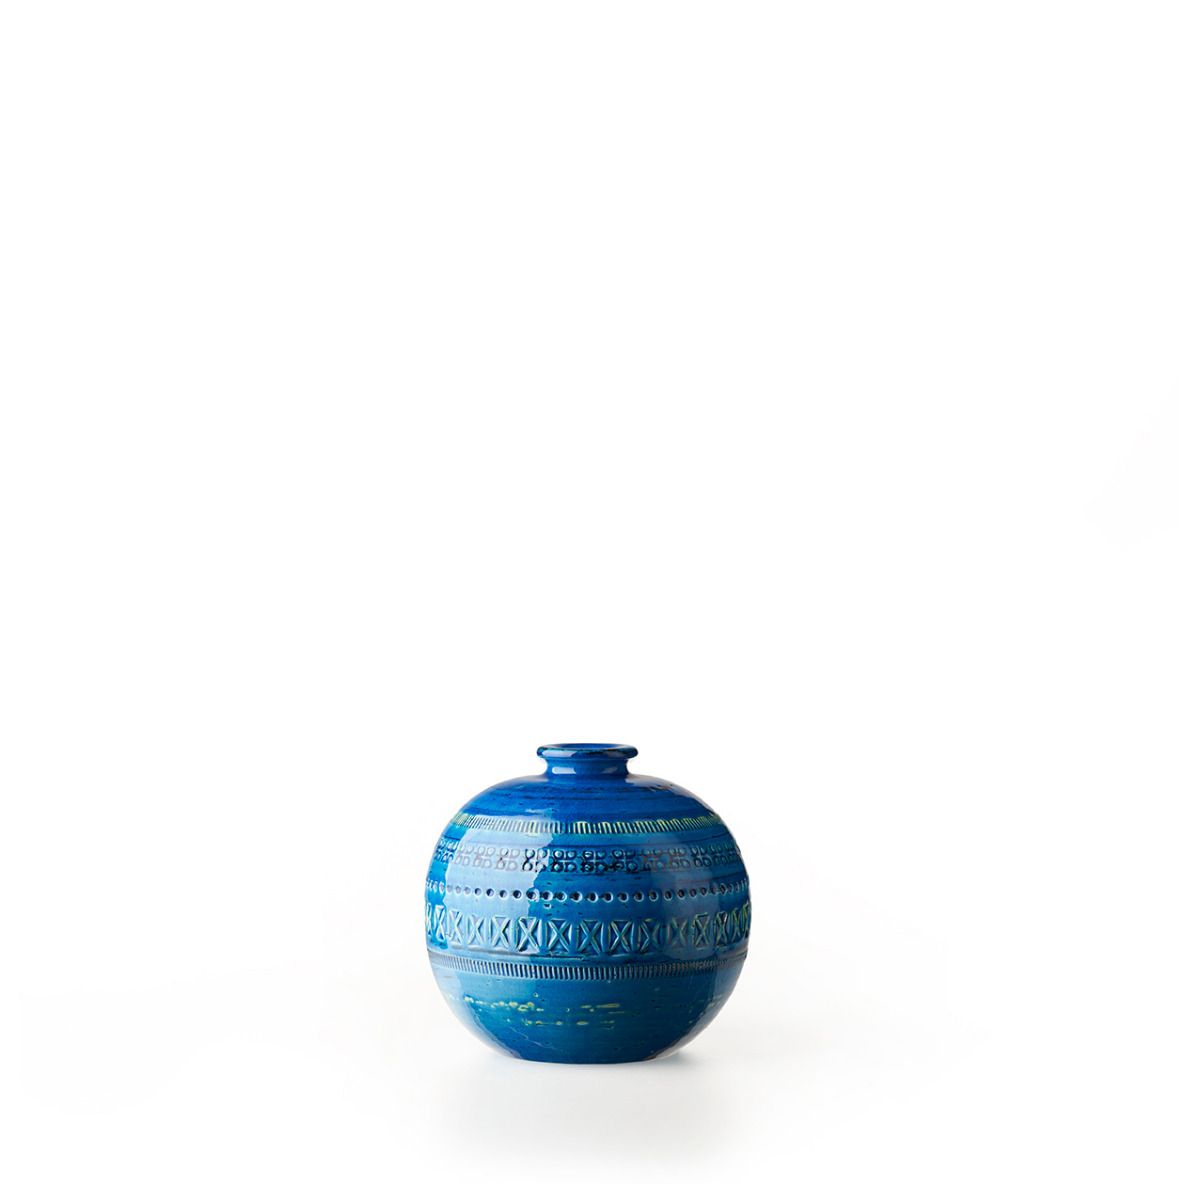 Ceramic Ball Vase. 15 cm